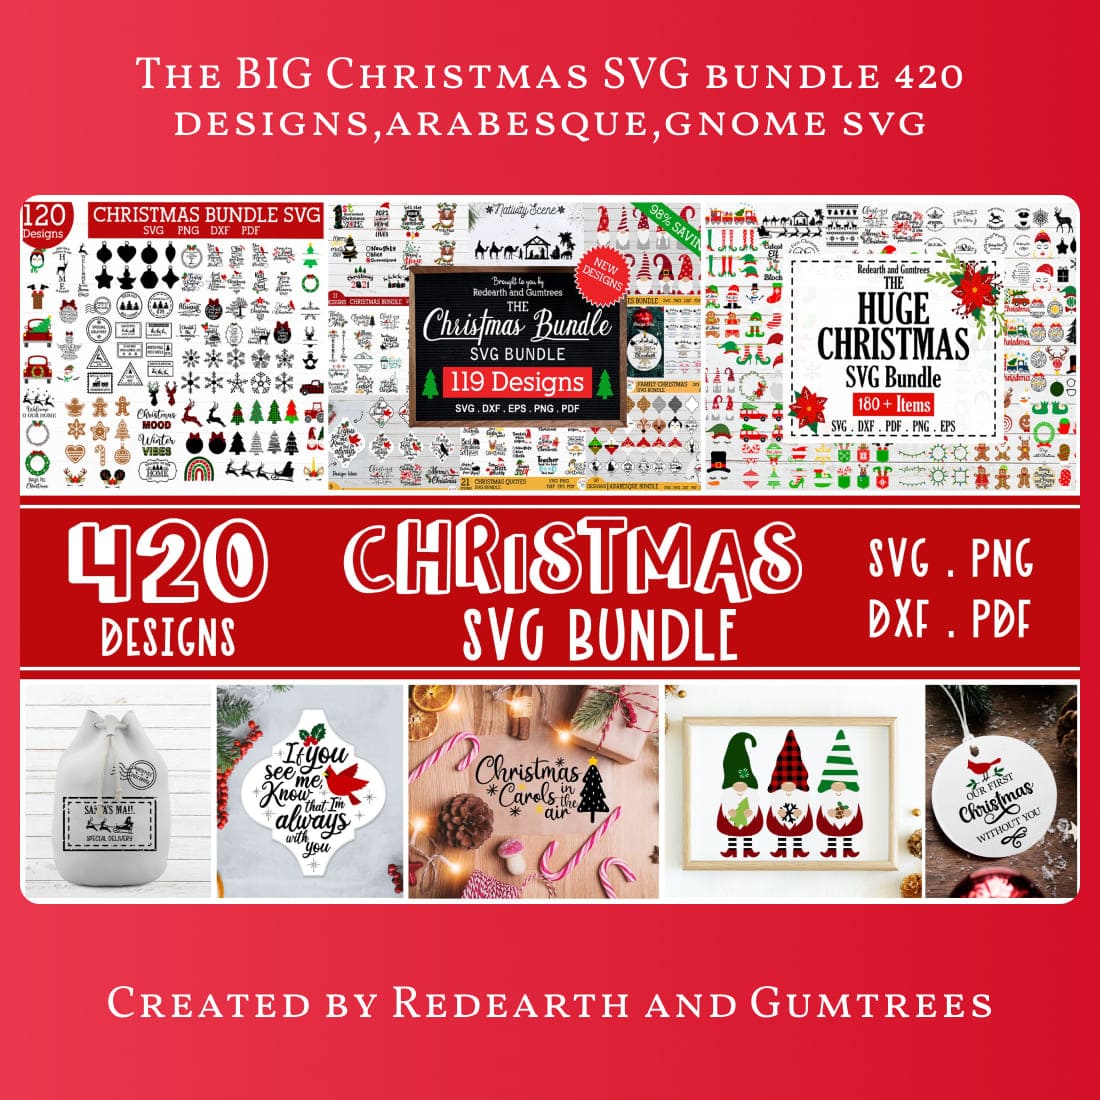 The BIG Christmas SVG bundle 420 designs,arabesque,gnome svg main cover.